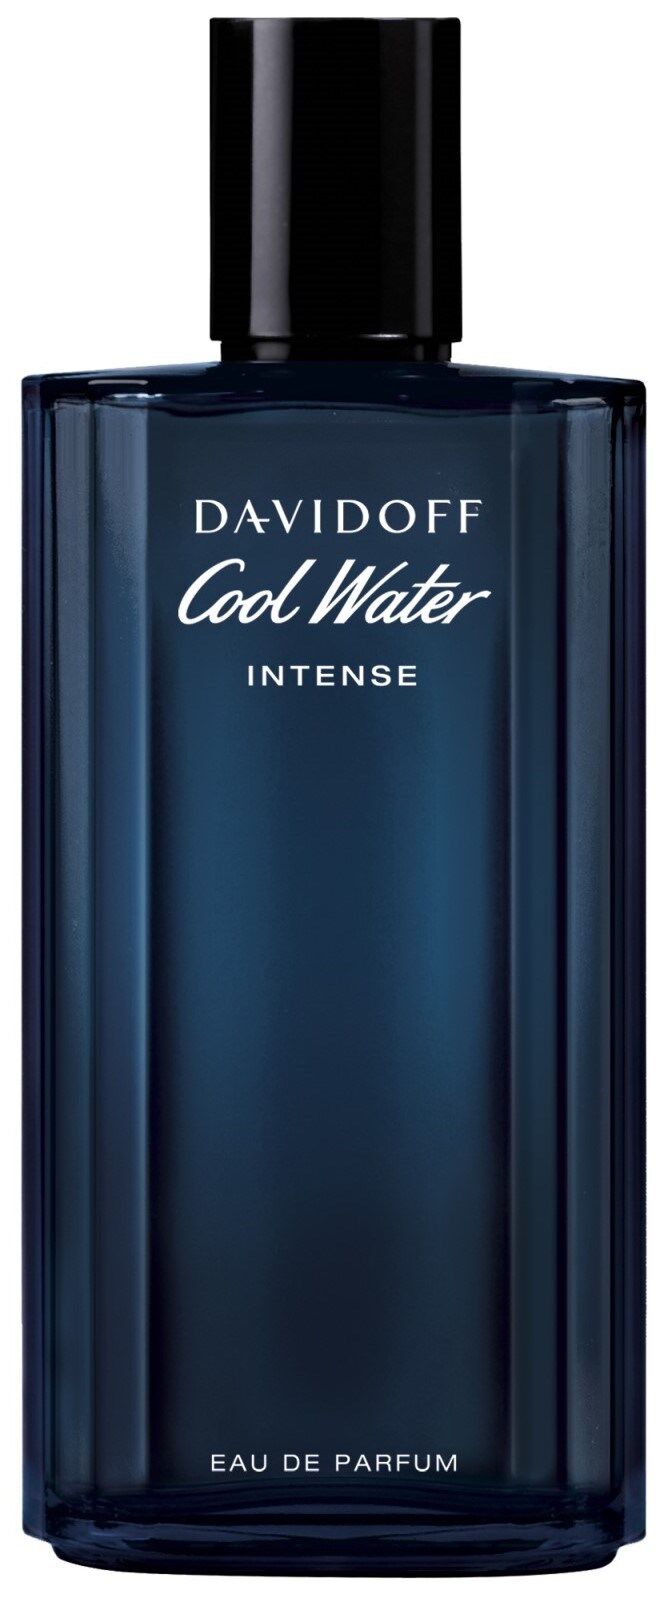 Davidoff Agua Fresca Intensa Eau de Parfum para Hombre 125mL